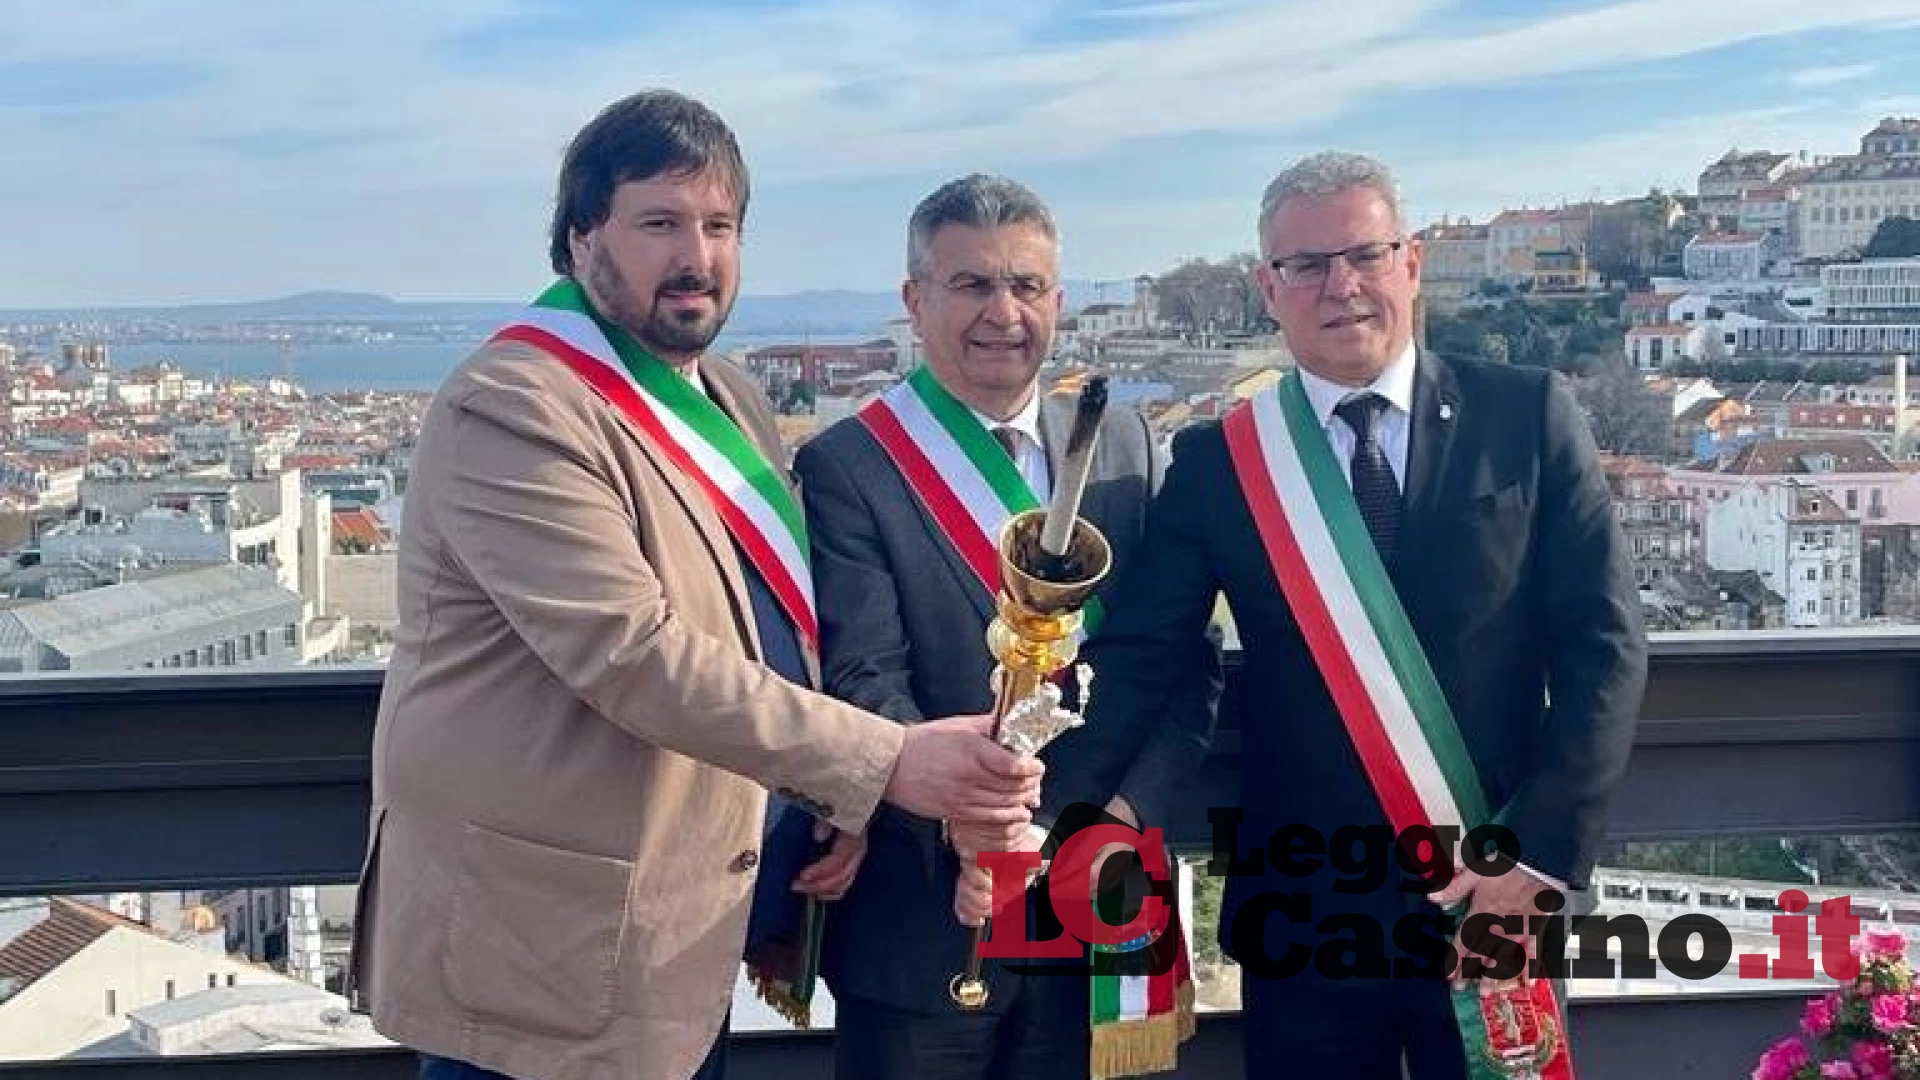 La Fiaccola a Lisbona: "Si rafforzano i legami tra Italia e Portogallo"